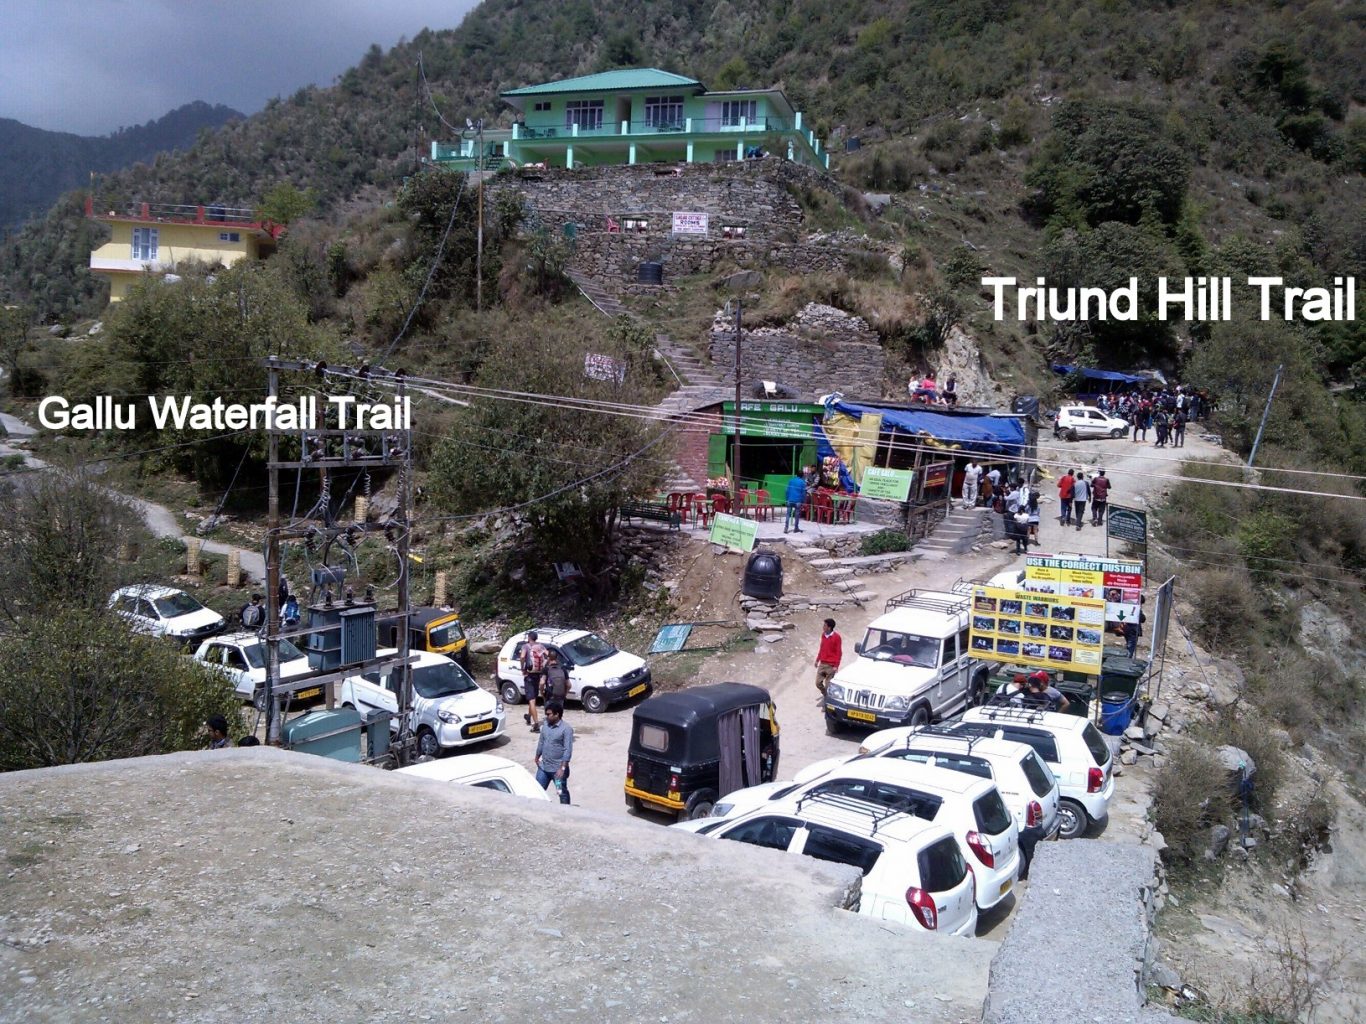 Gallu Waterfall Trail from Gallu Devi Temple